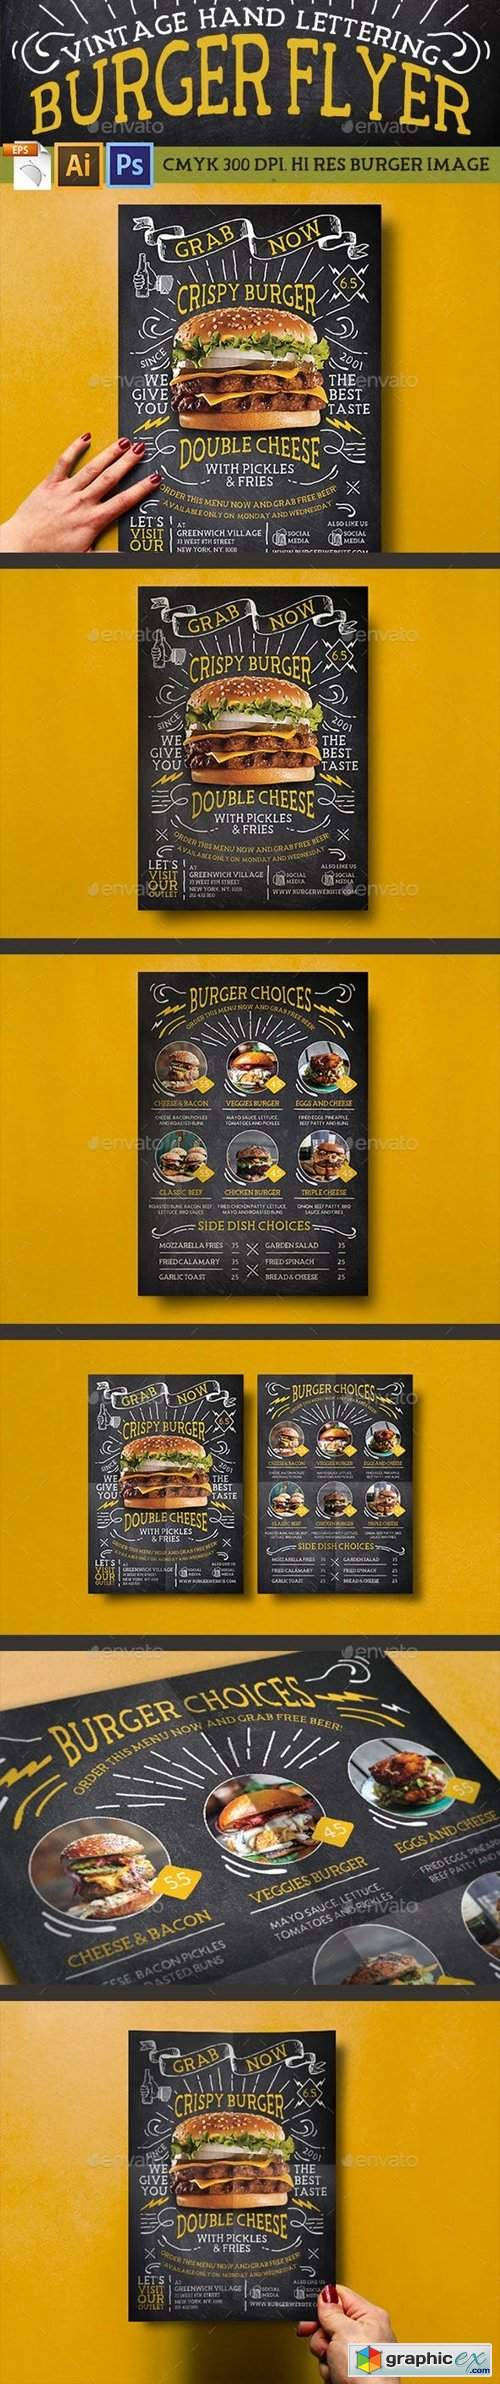 Vintage Hand Lettering Burger Flyer